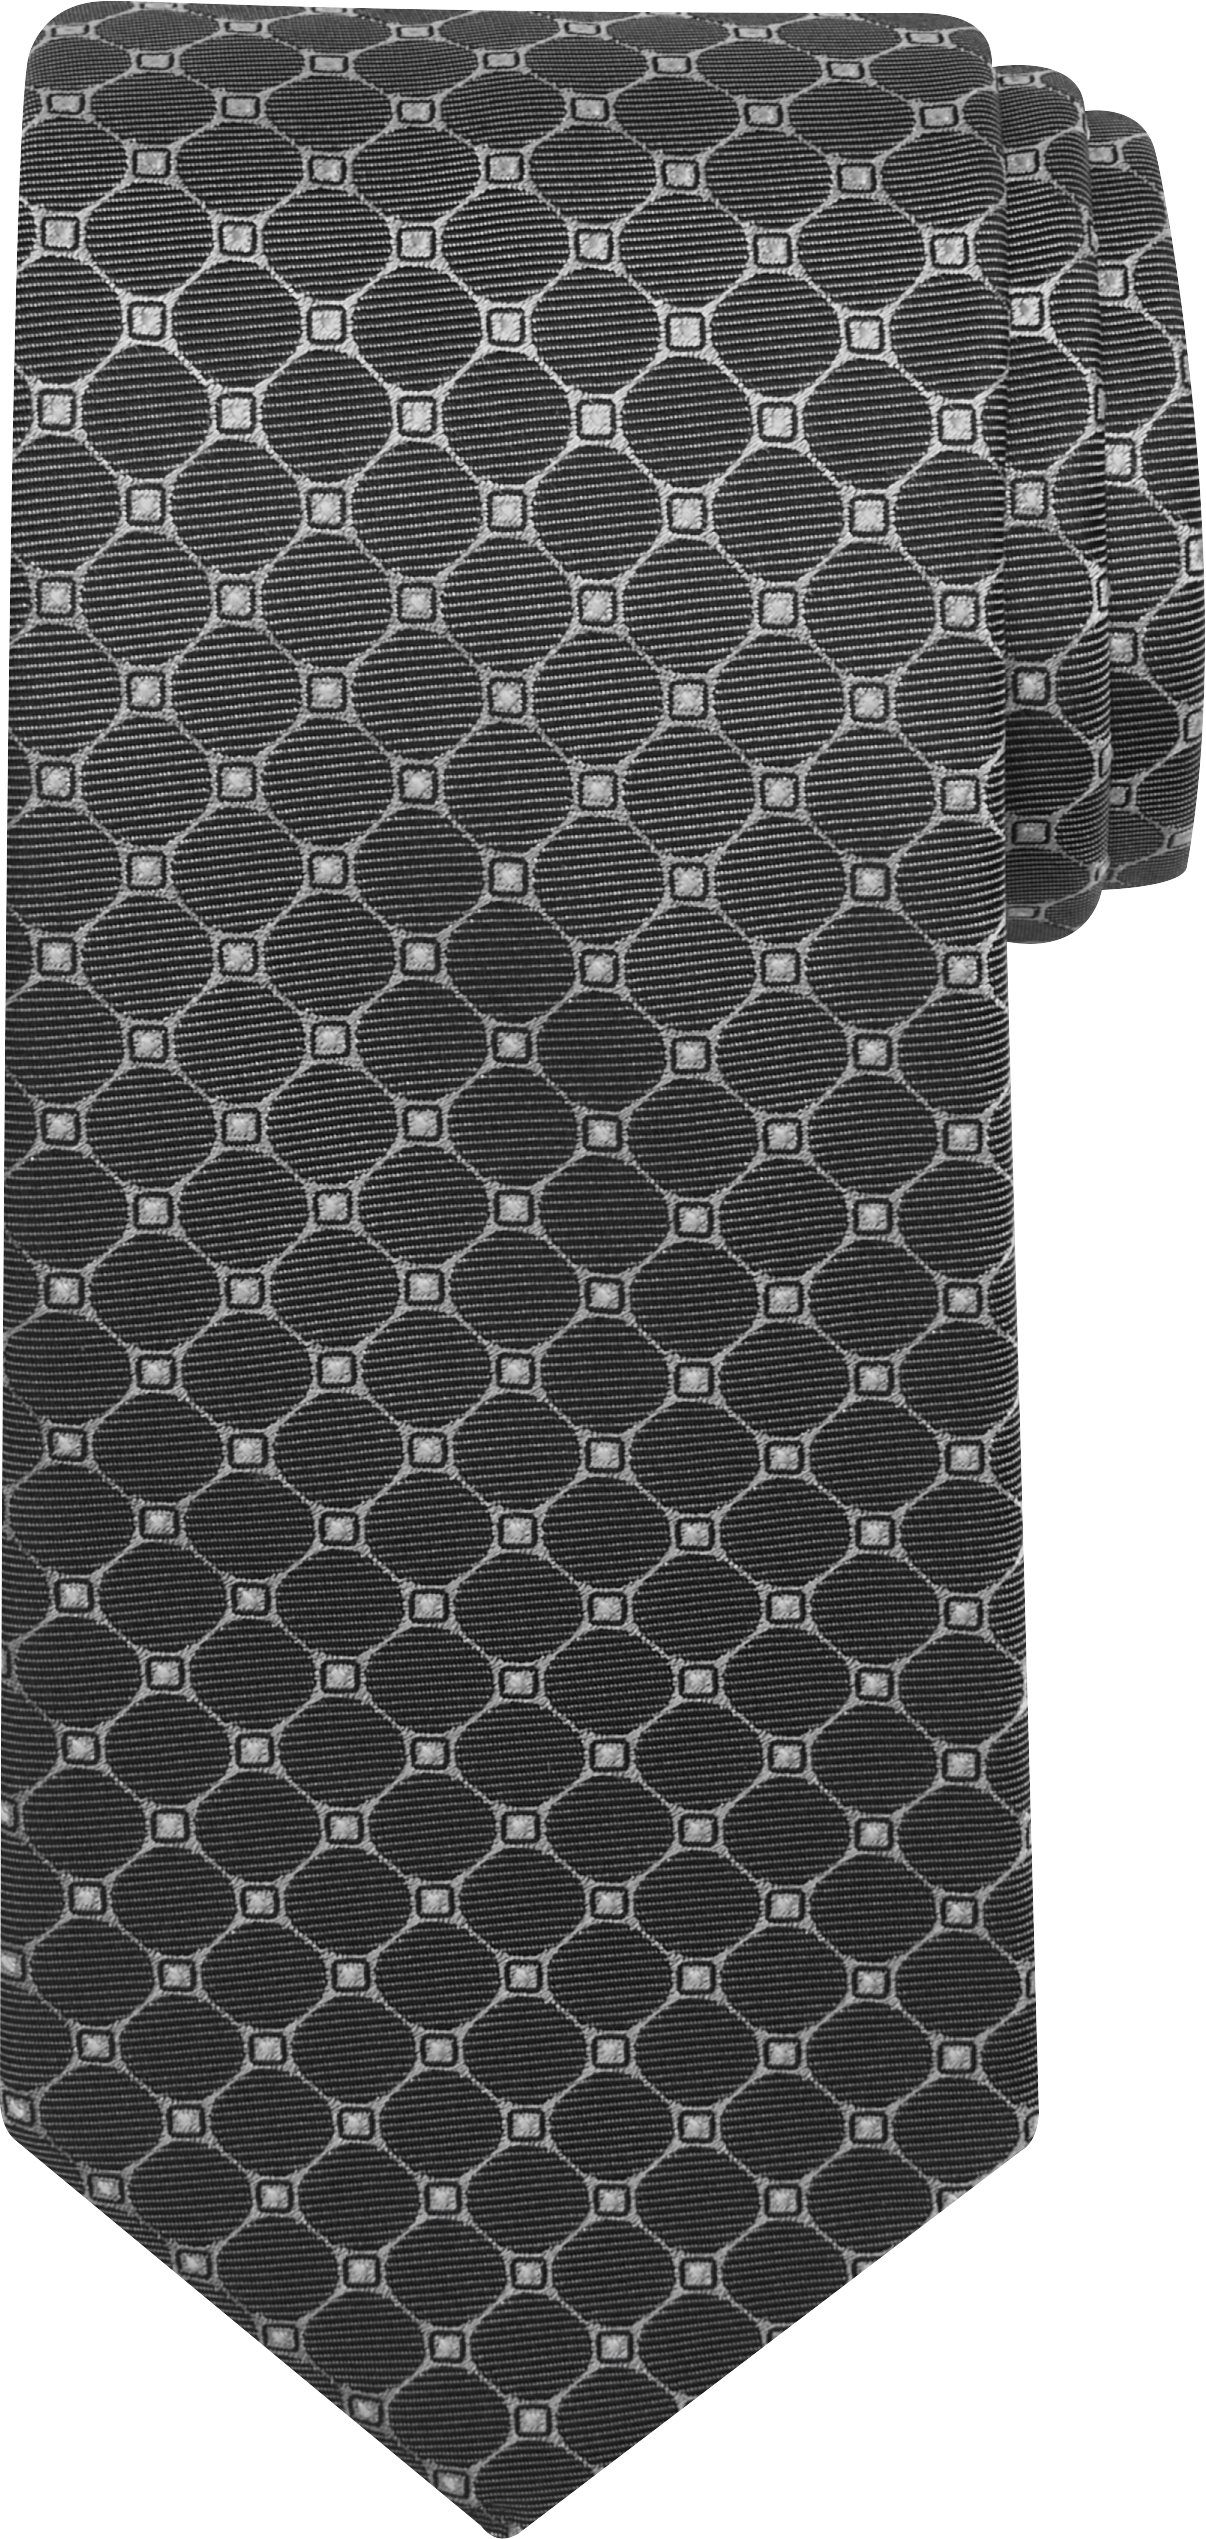 Narrow Diamond Grid Tie